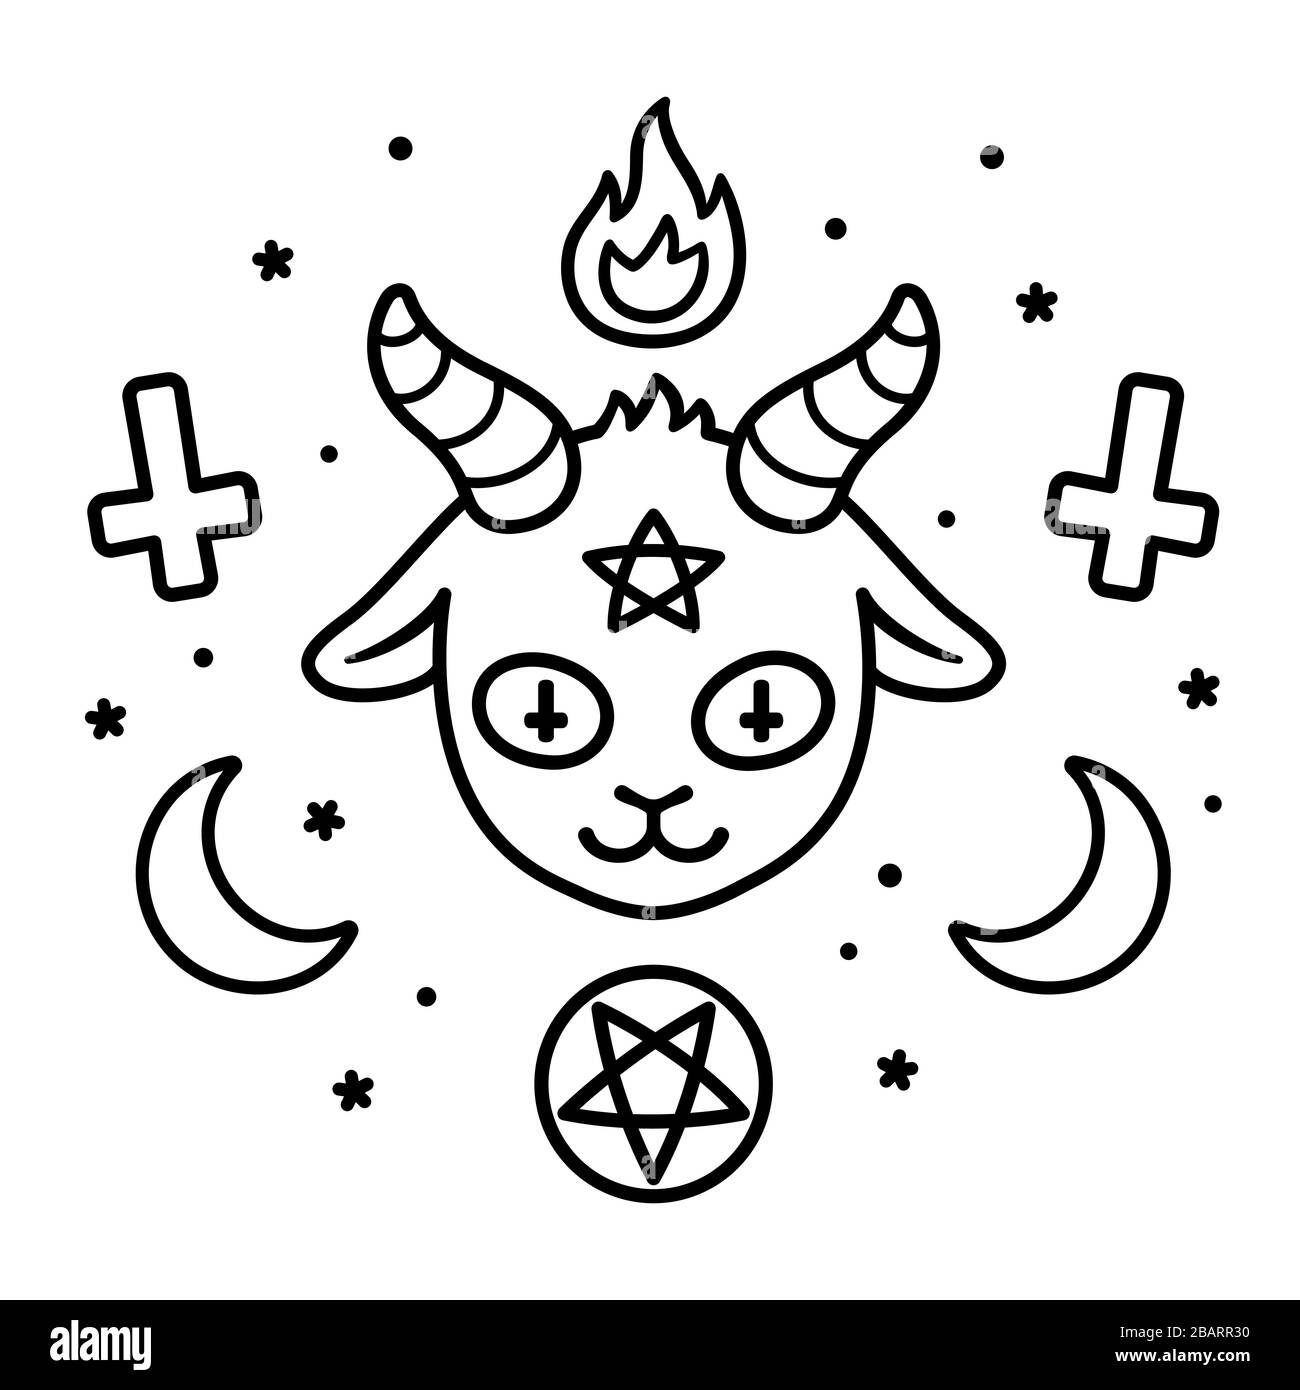 Joli dessin de signe Satan, tête de chèvre de caricature diable avec pentagramme, feu, lunes de croissant et croix à l'envers. Gribouille de symboles sataniques noir et blanc, Illustration de Vecteur